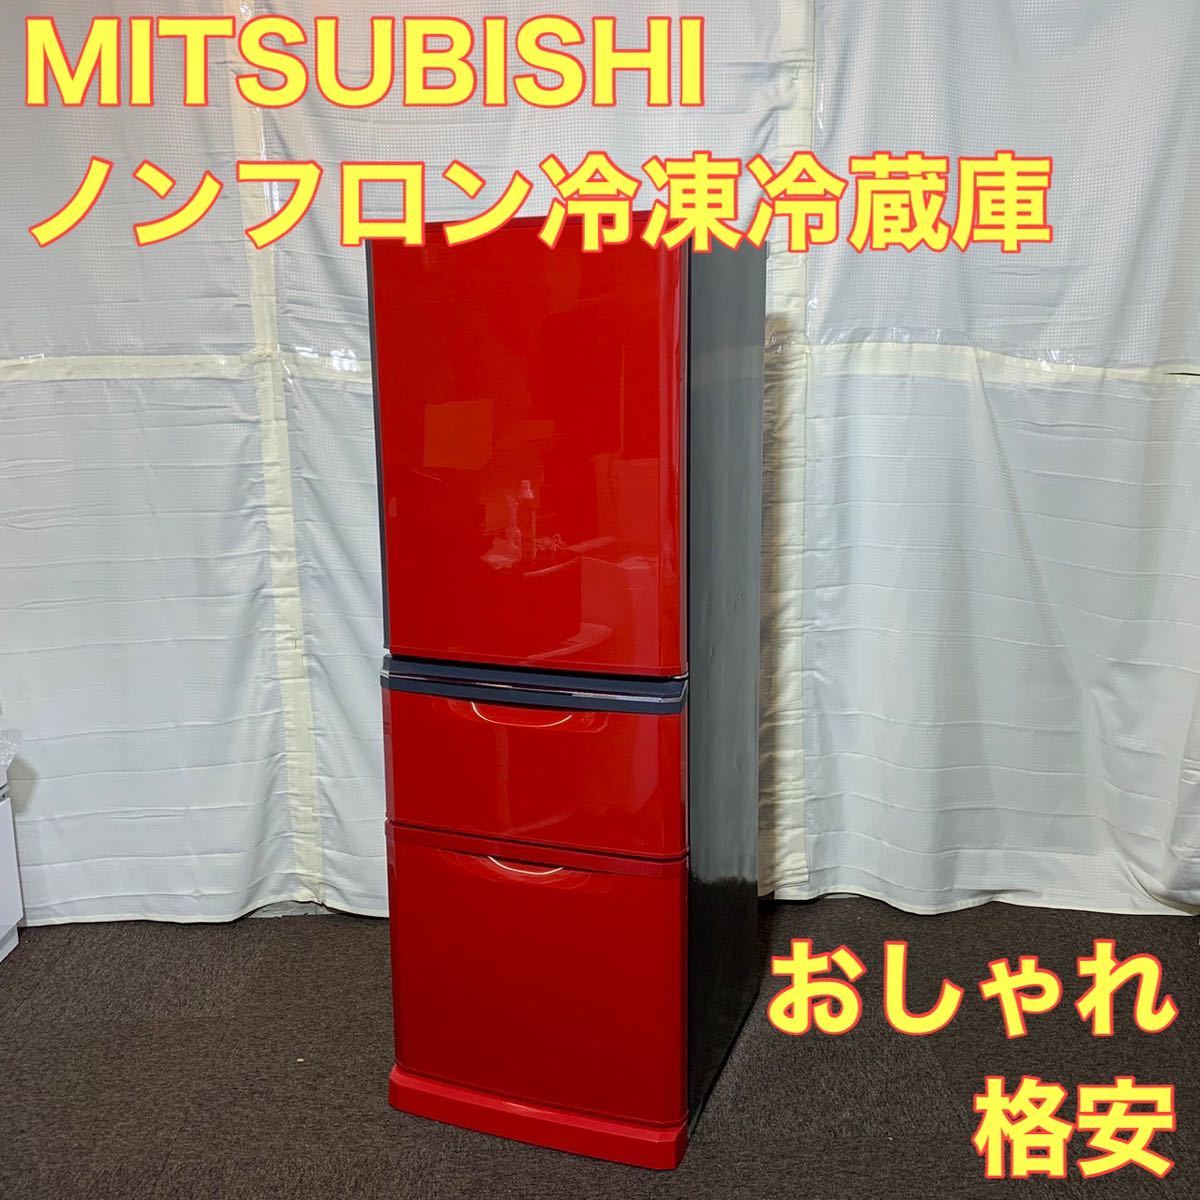 三菱 冷蔵庫 MR-C34EZ-R1 大容量冷蔵庫 ノンフロン 赤 レッド おしゃれ 格安 A0162